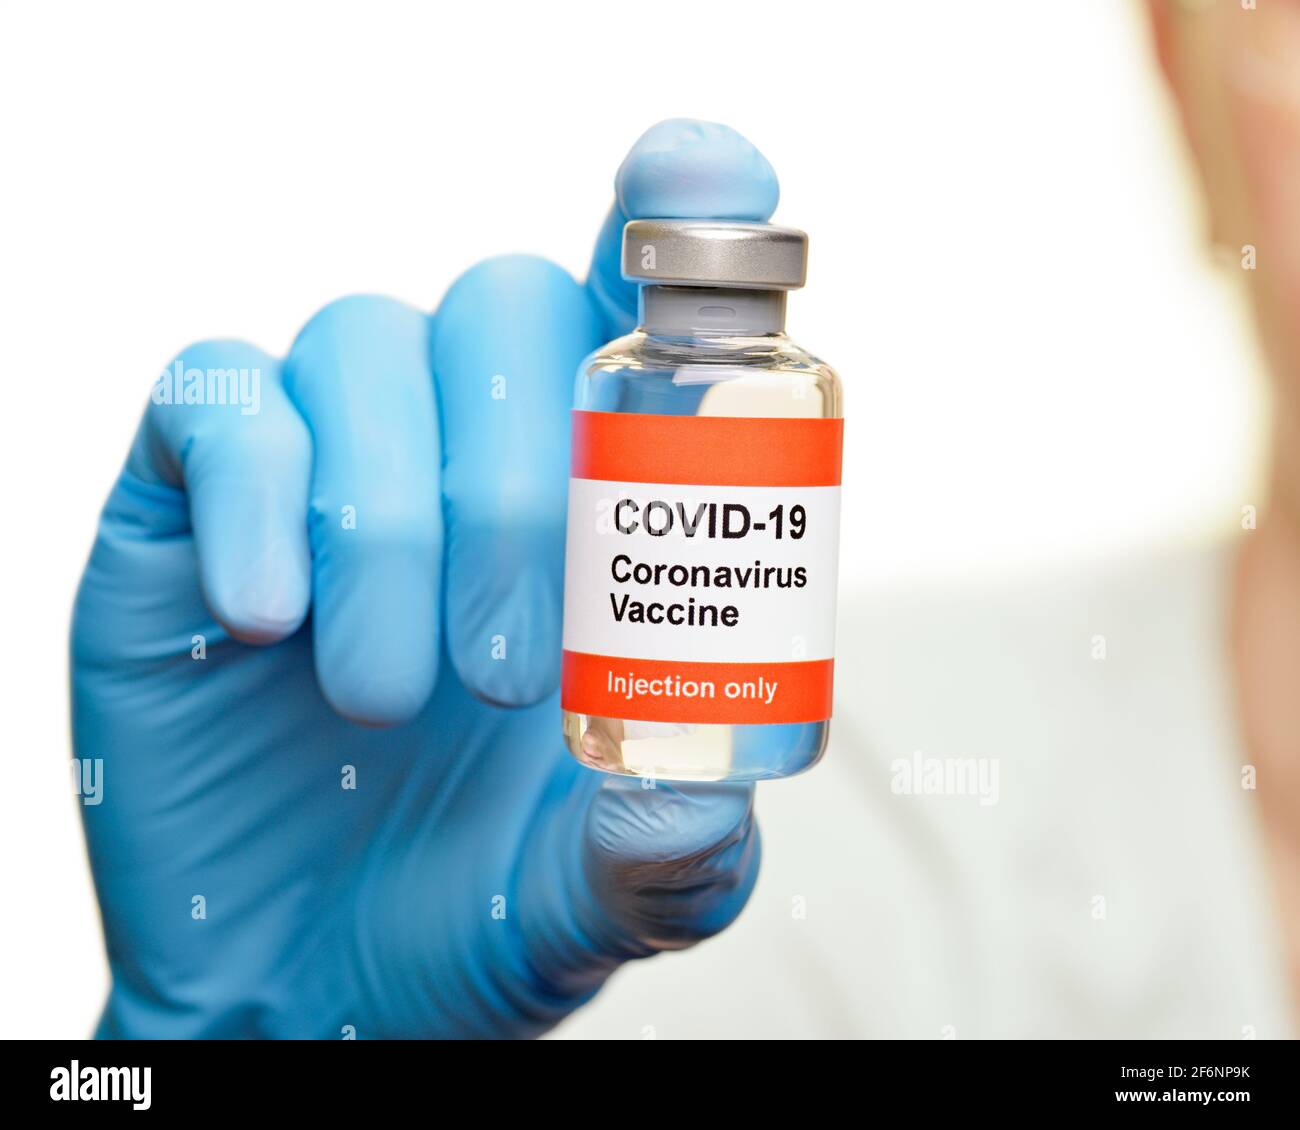 Coronavirus Vaccine Stock Photo